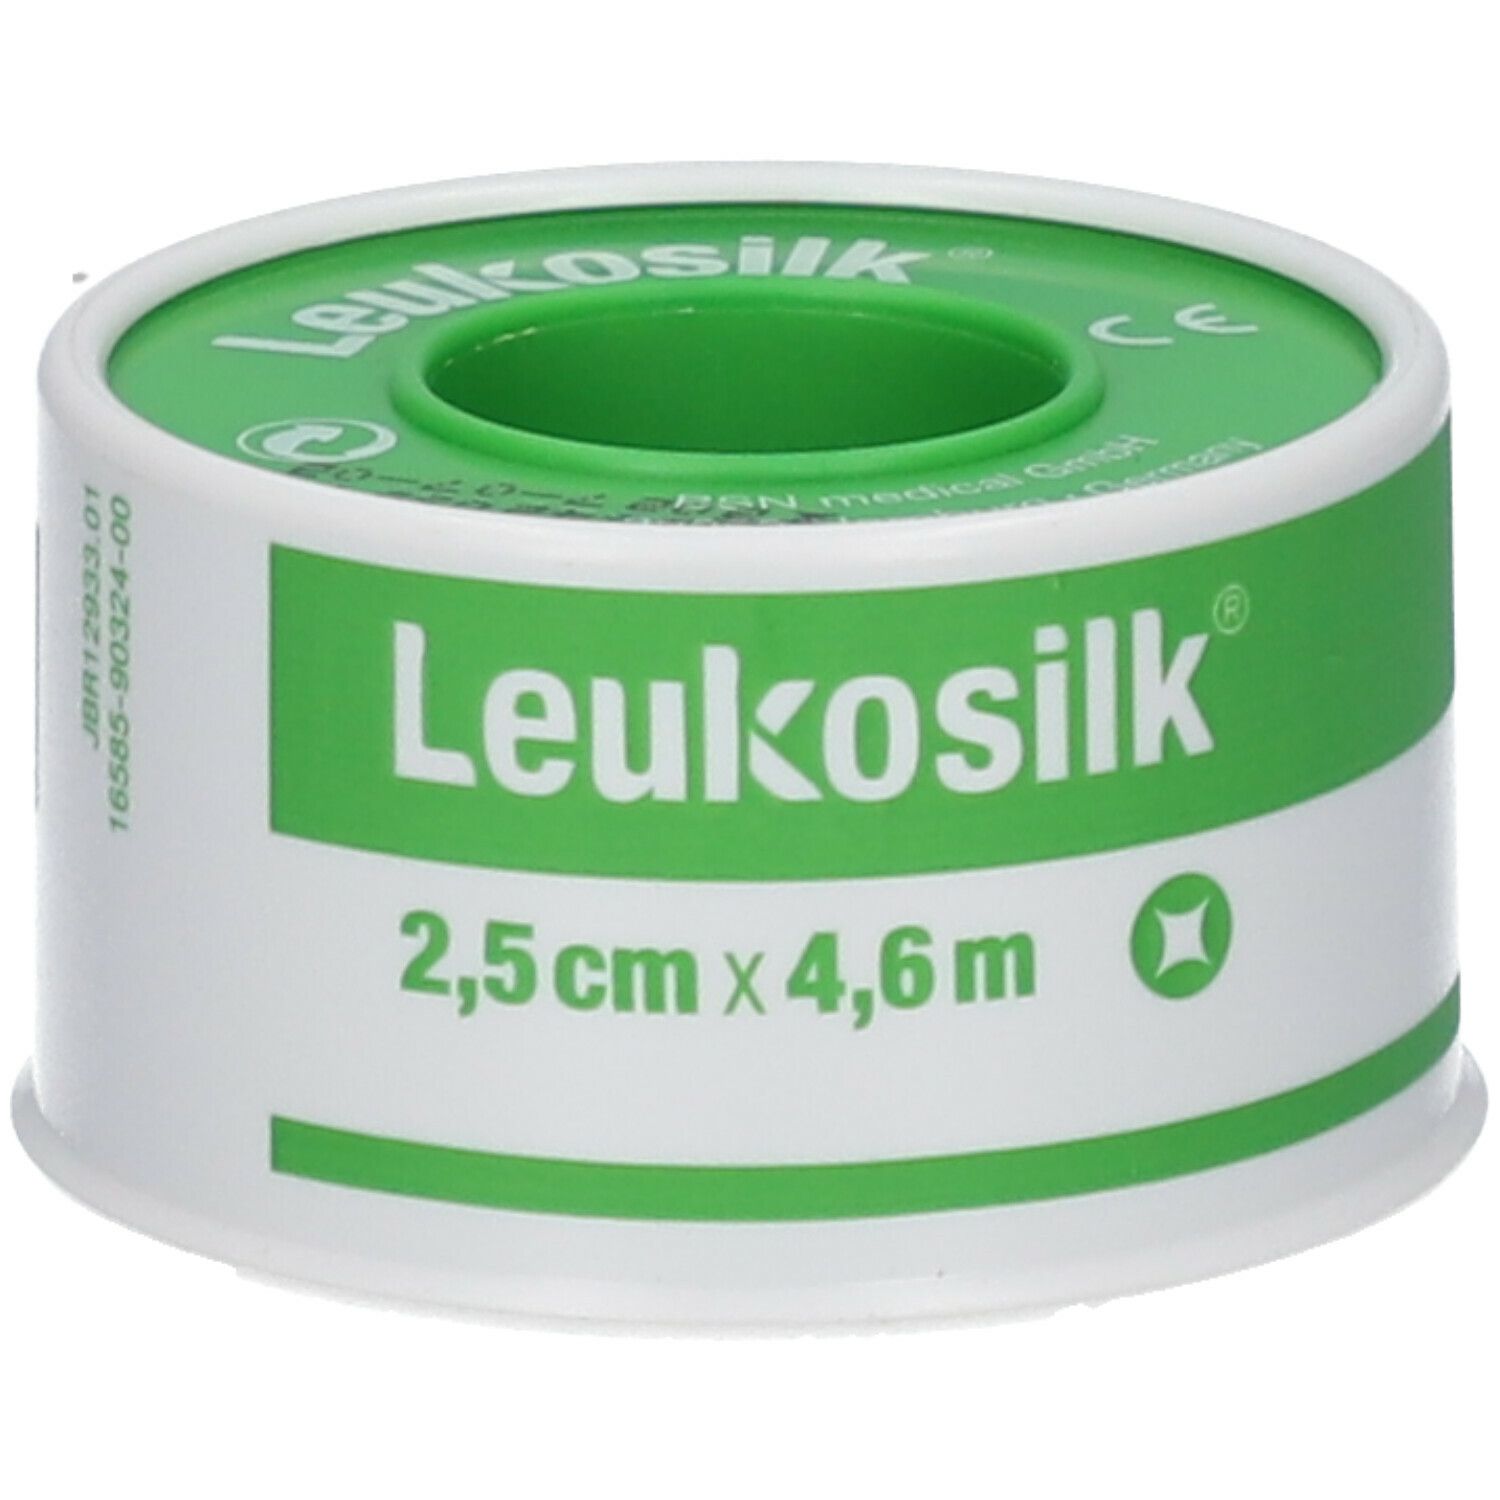 Leukosilk® 2,5 cm x 5 m 12 St - SHOP APOTHEKE